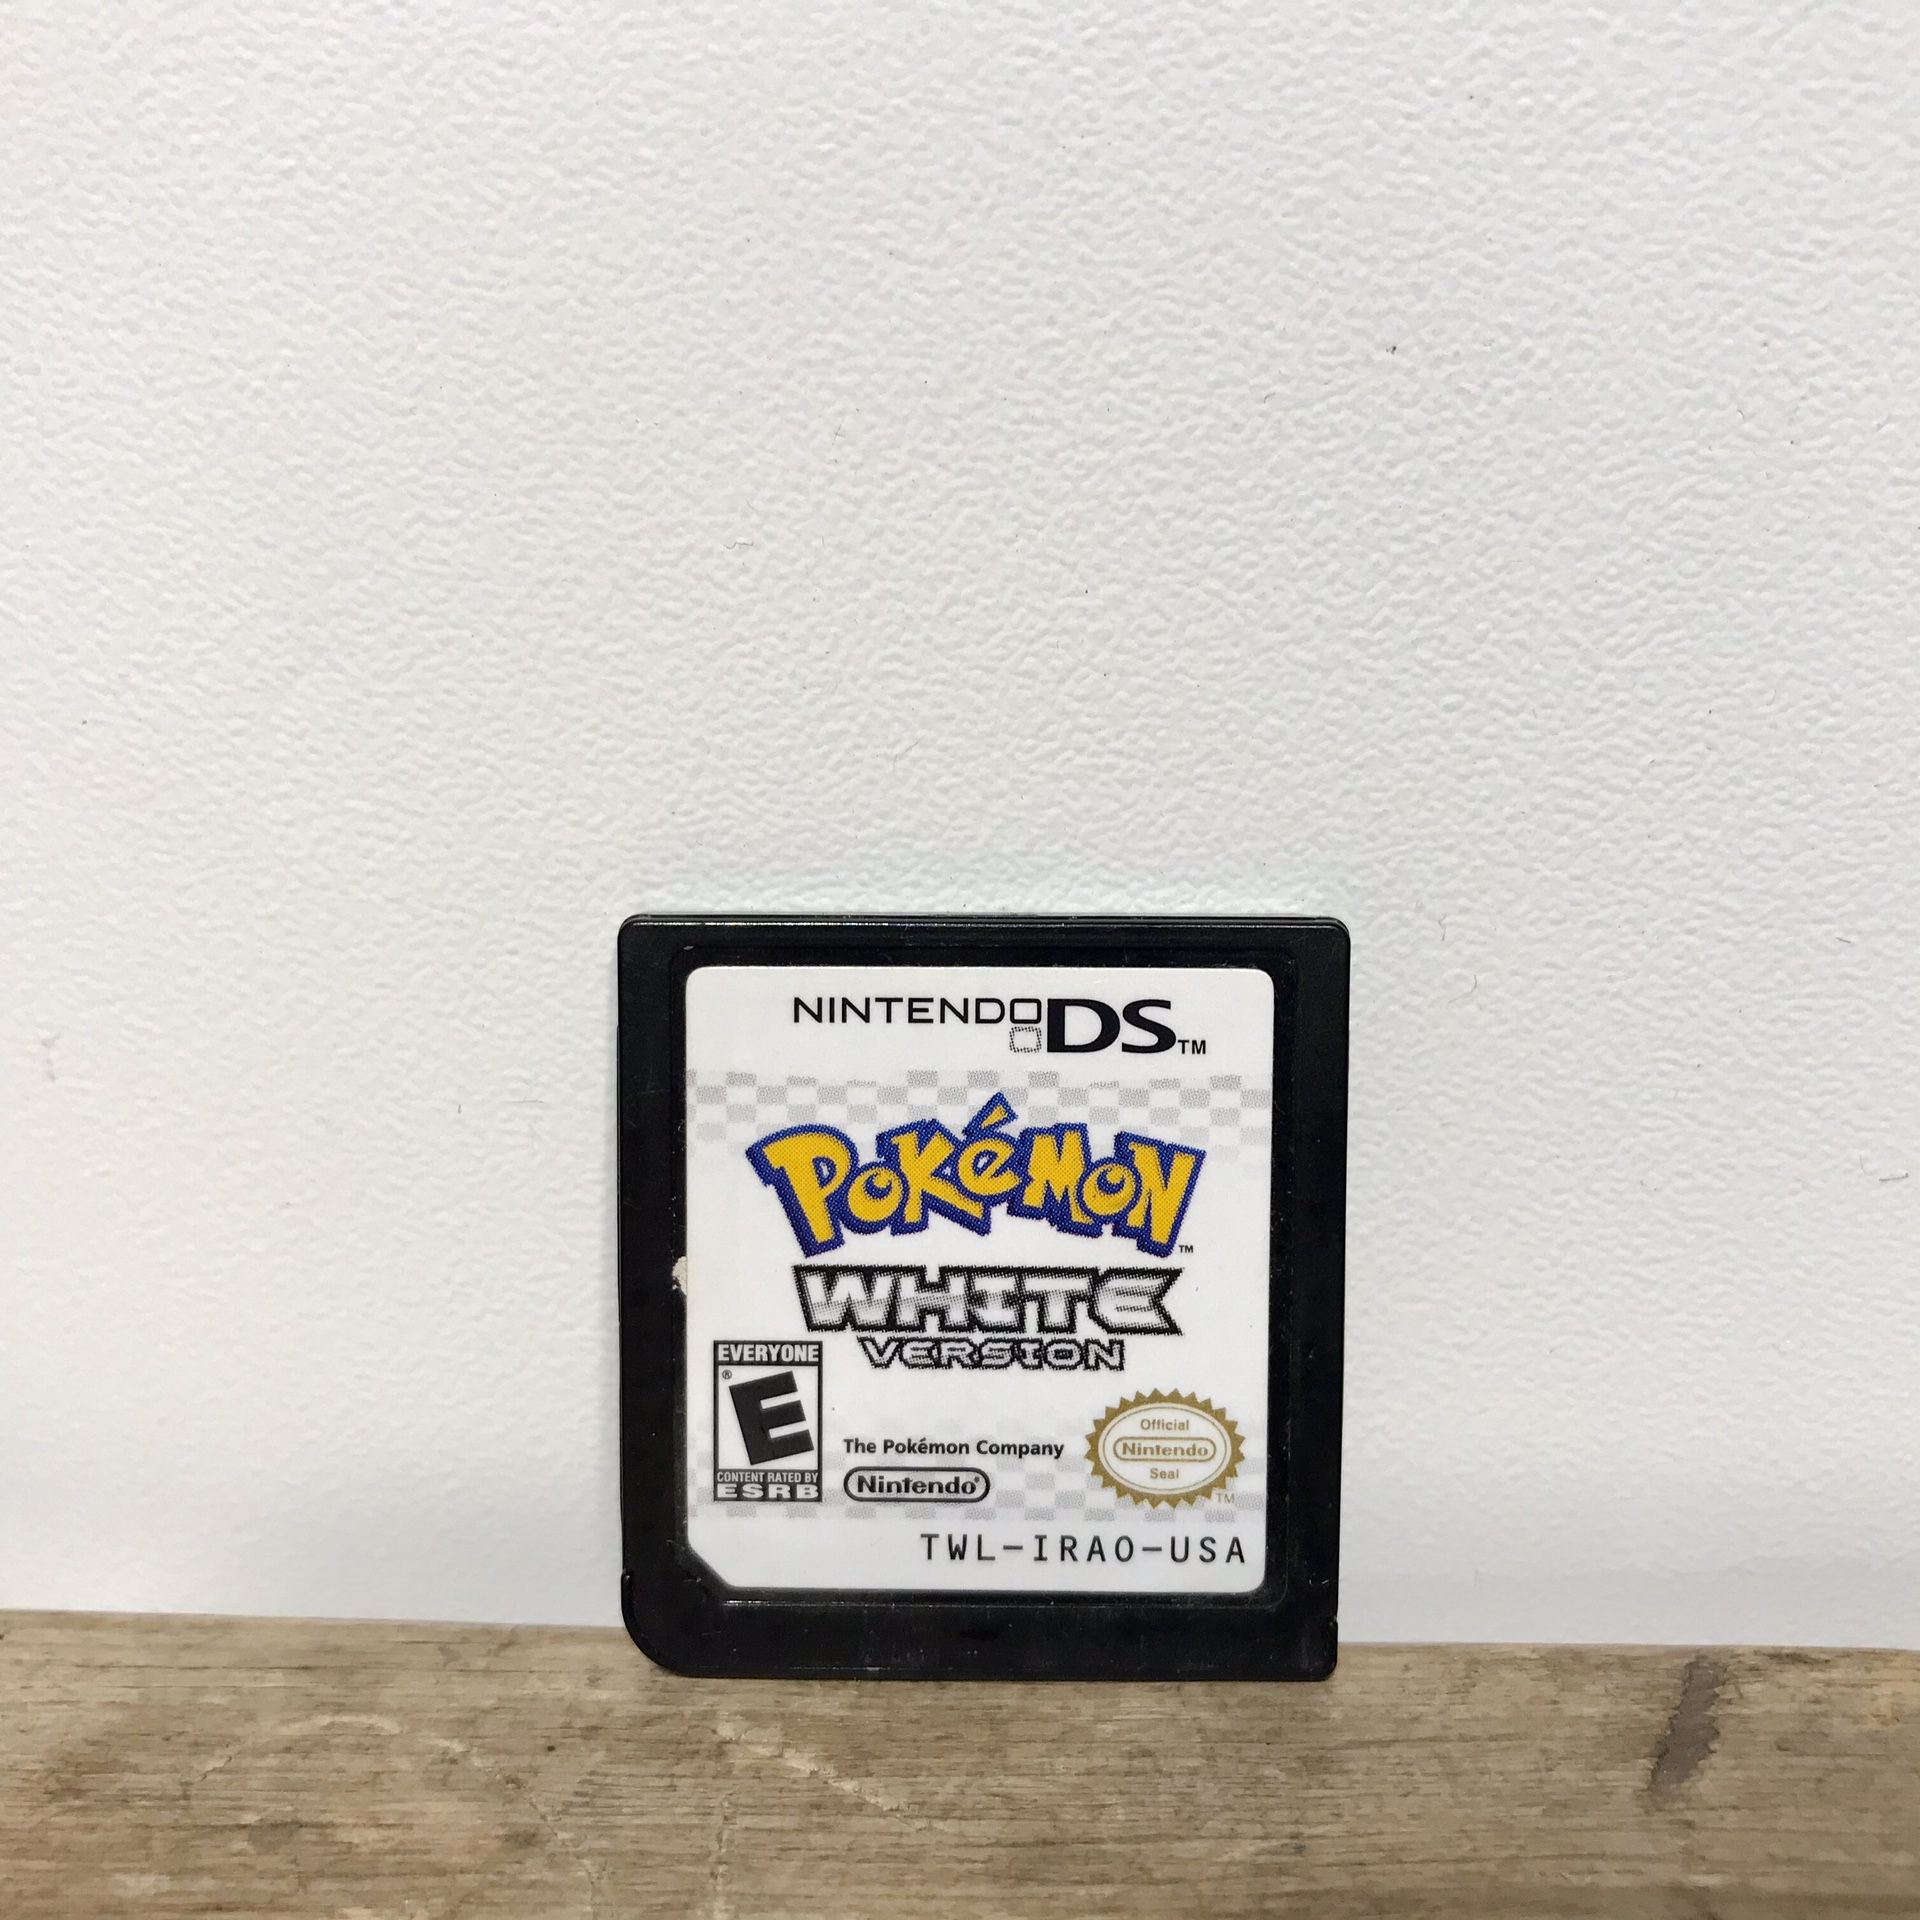 Pokemon White Version For Nintendo DS